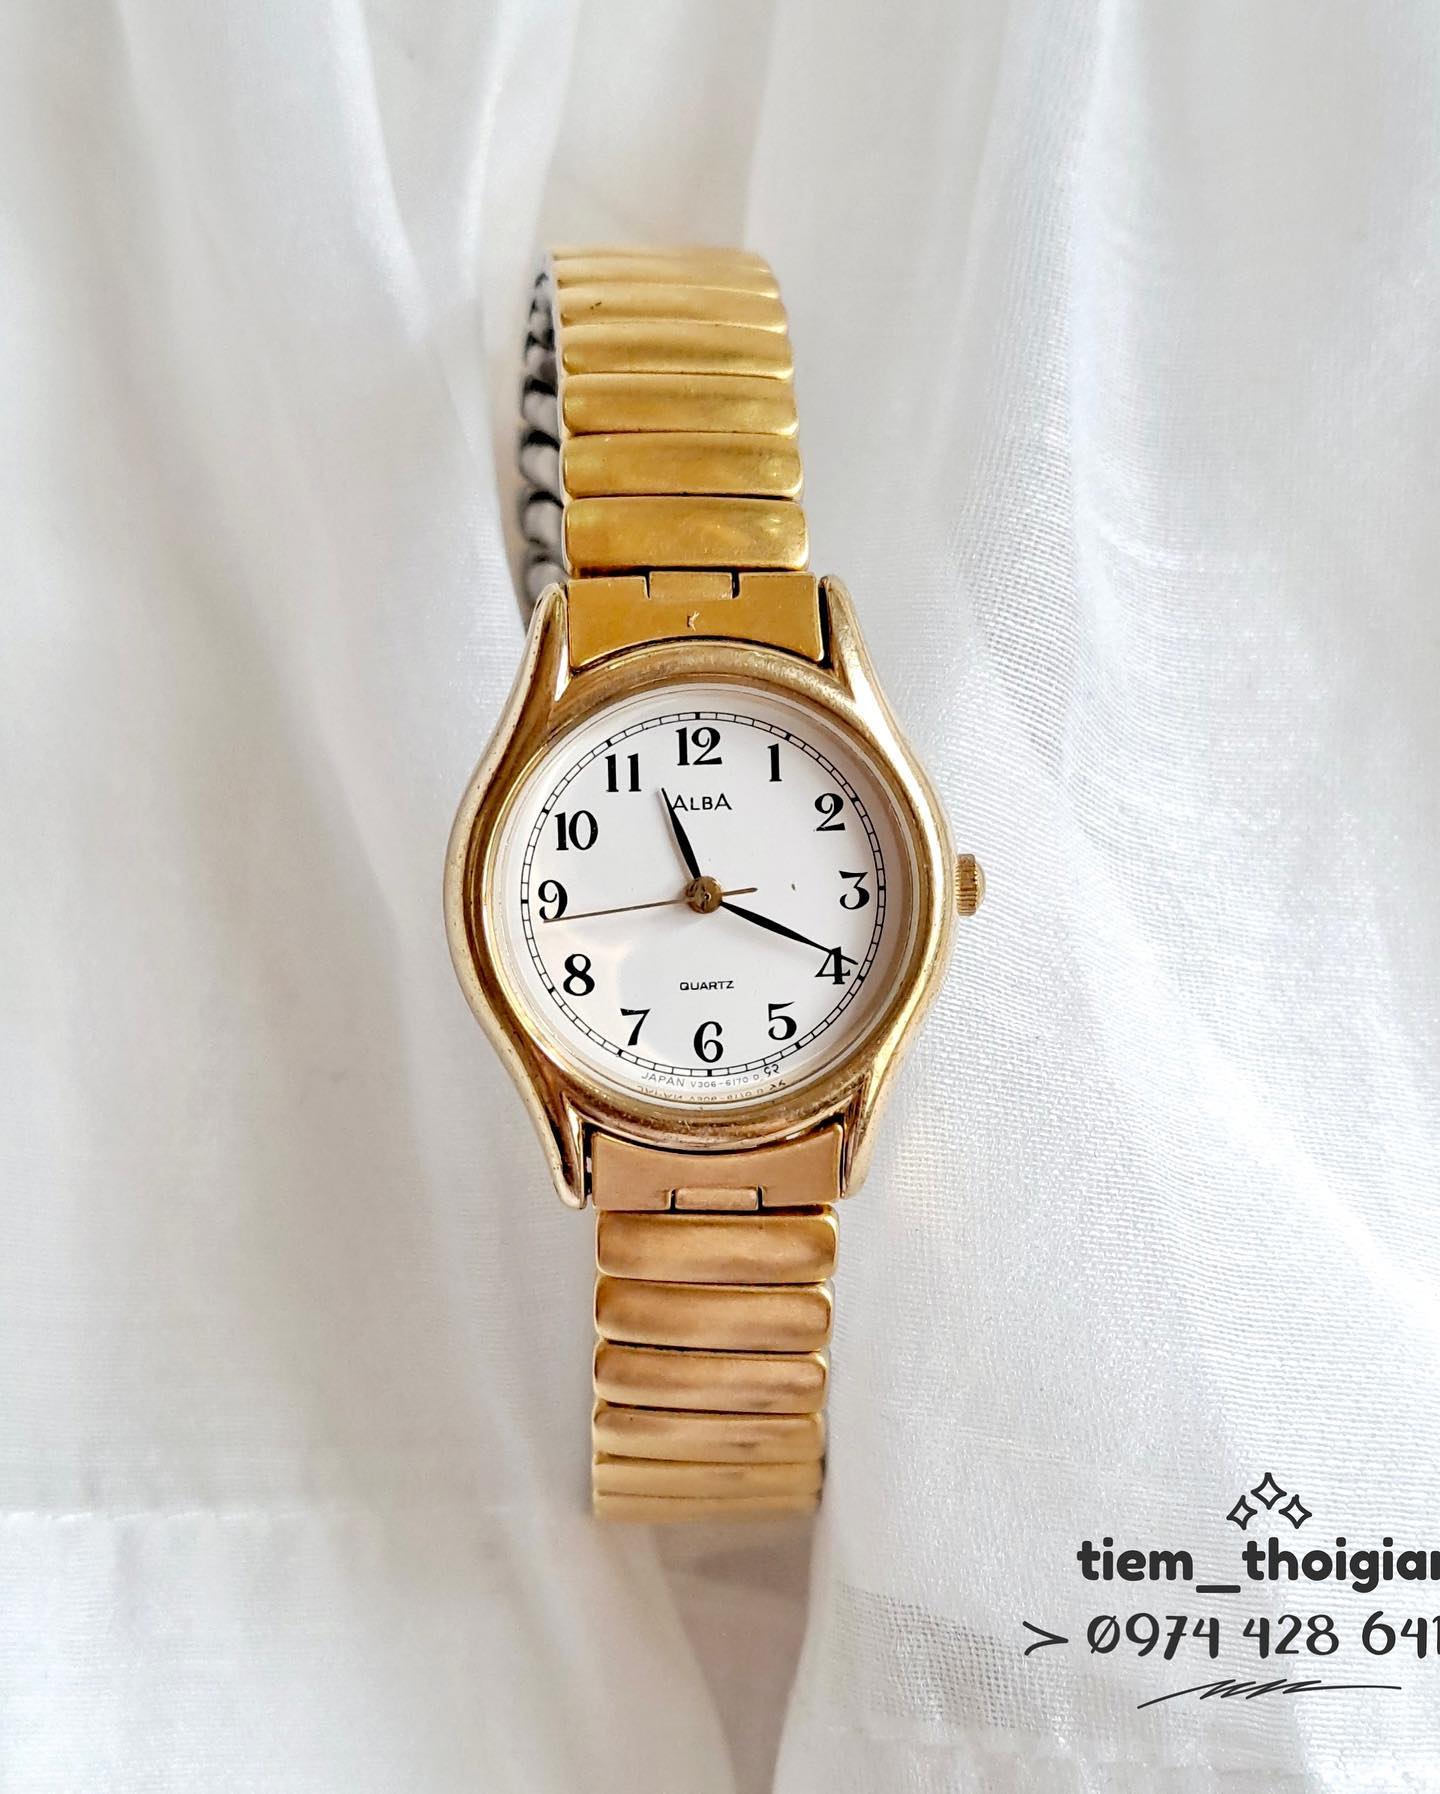 Đồng hồ Si Nhật - Nữ - ALBA by SEIKO - Mạ vàng toàn thân - Dây kiểu chun